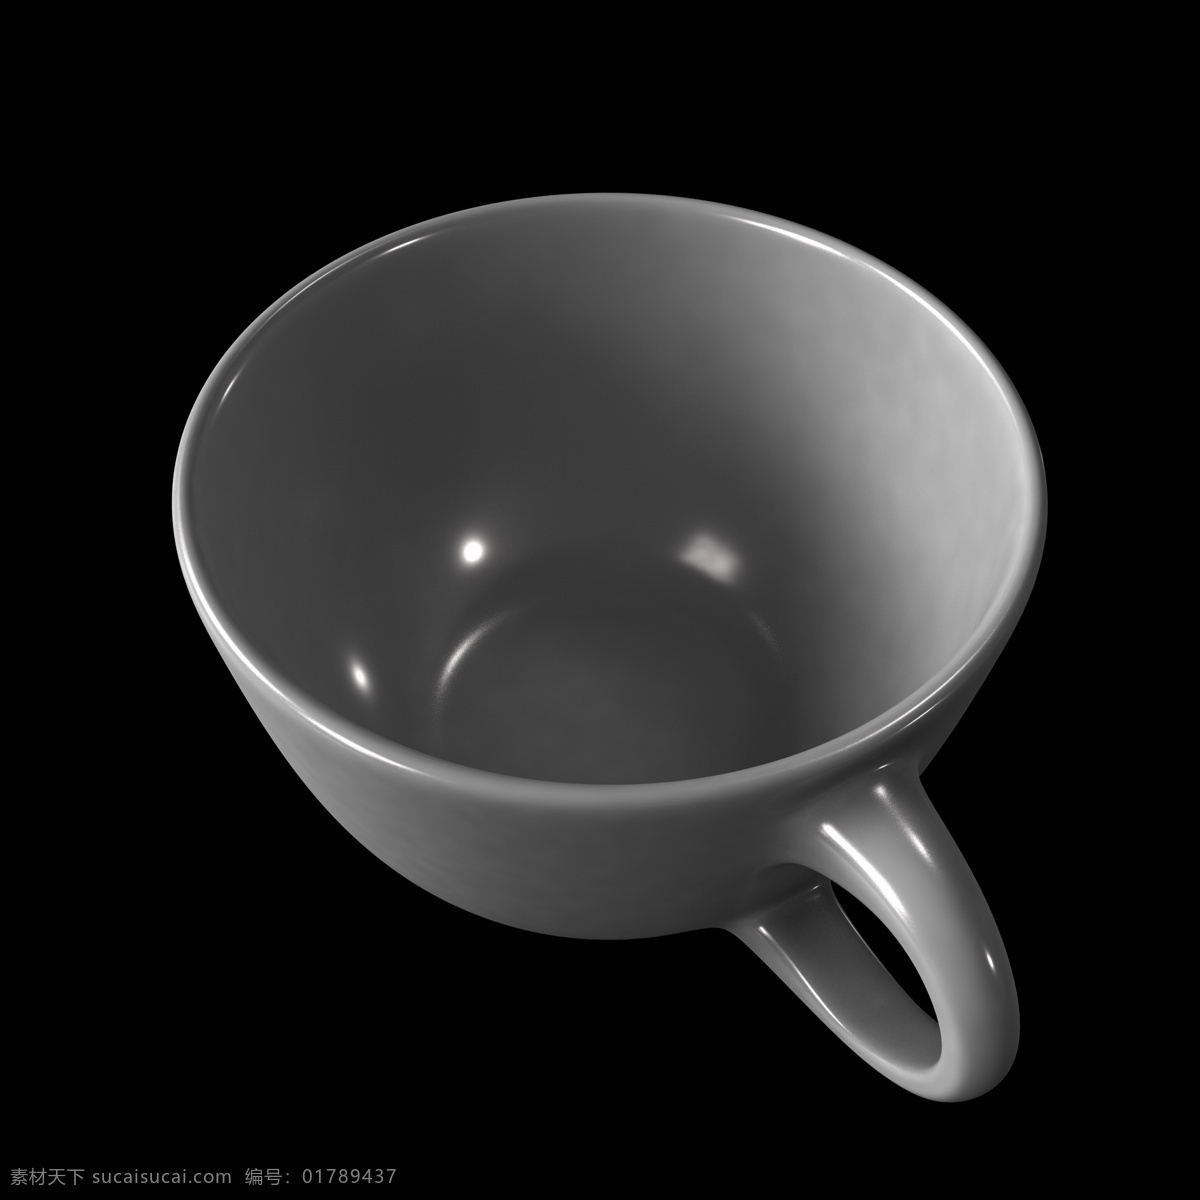 立体 创意 咖啡杯 俯视图 立体咖啡杯 白色 陶瓷 杯子 白色杯子 咖啡杯俯视图 c4d